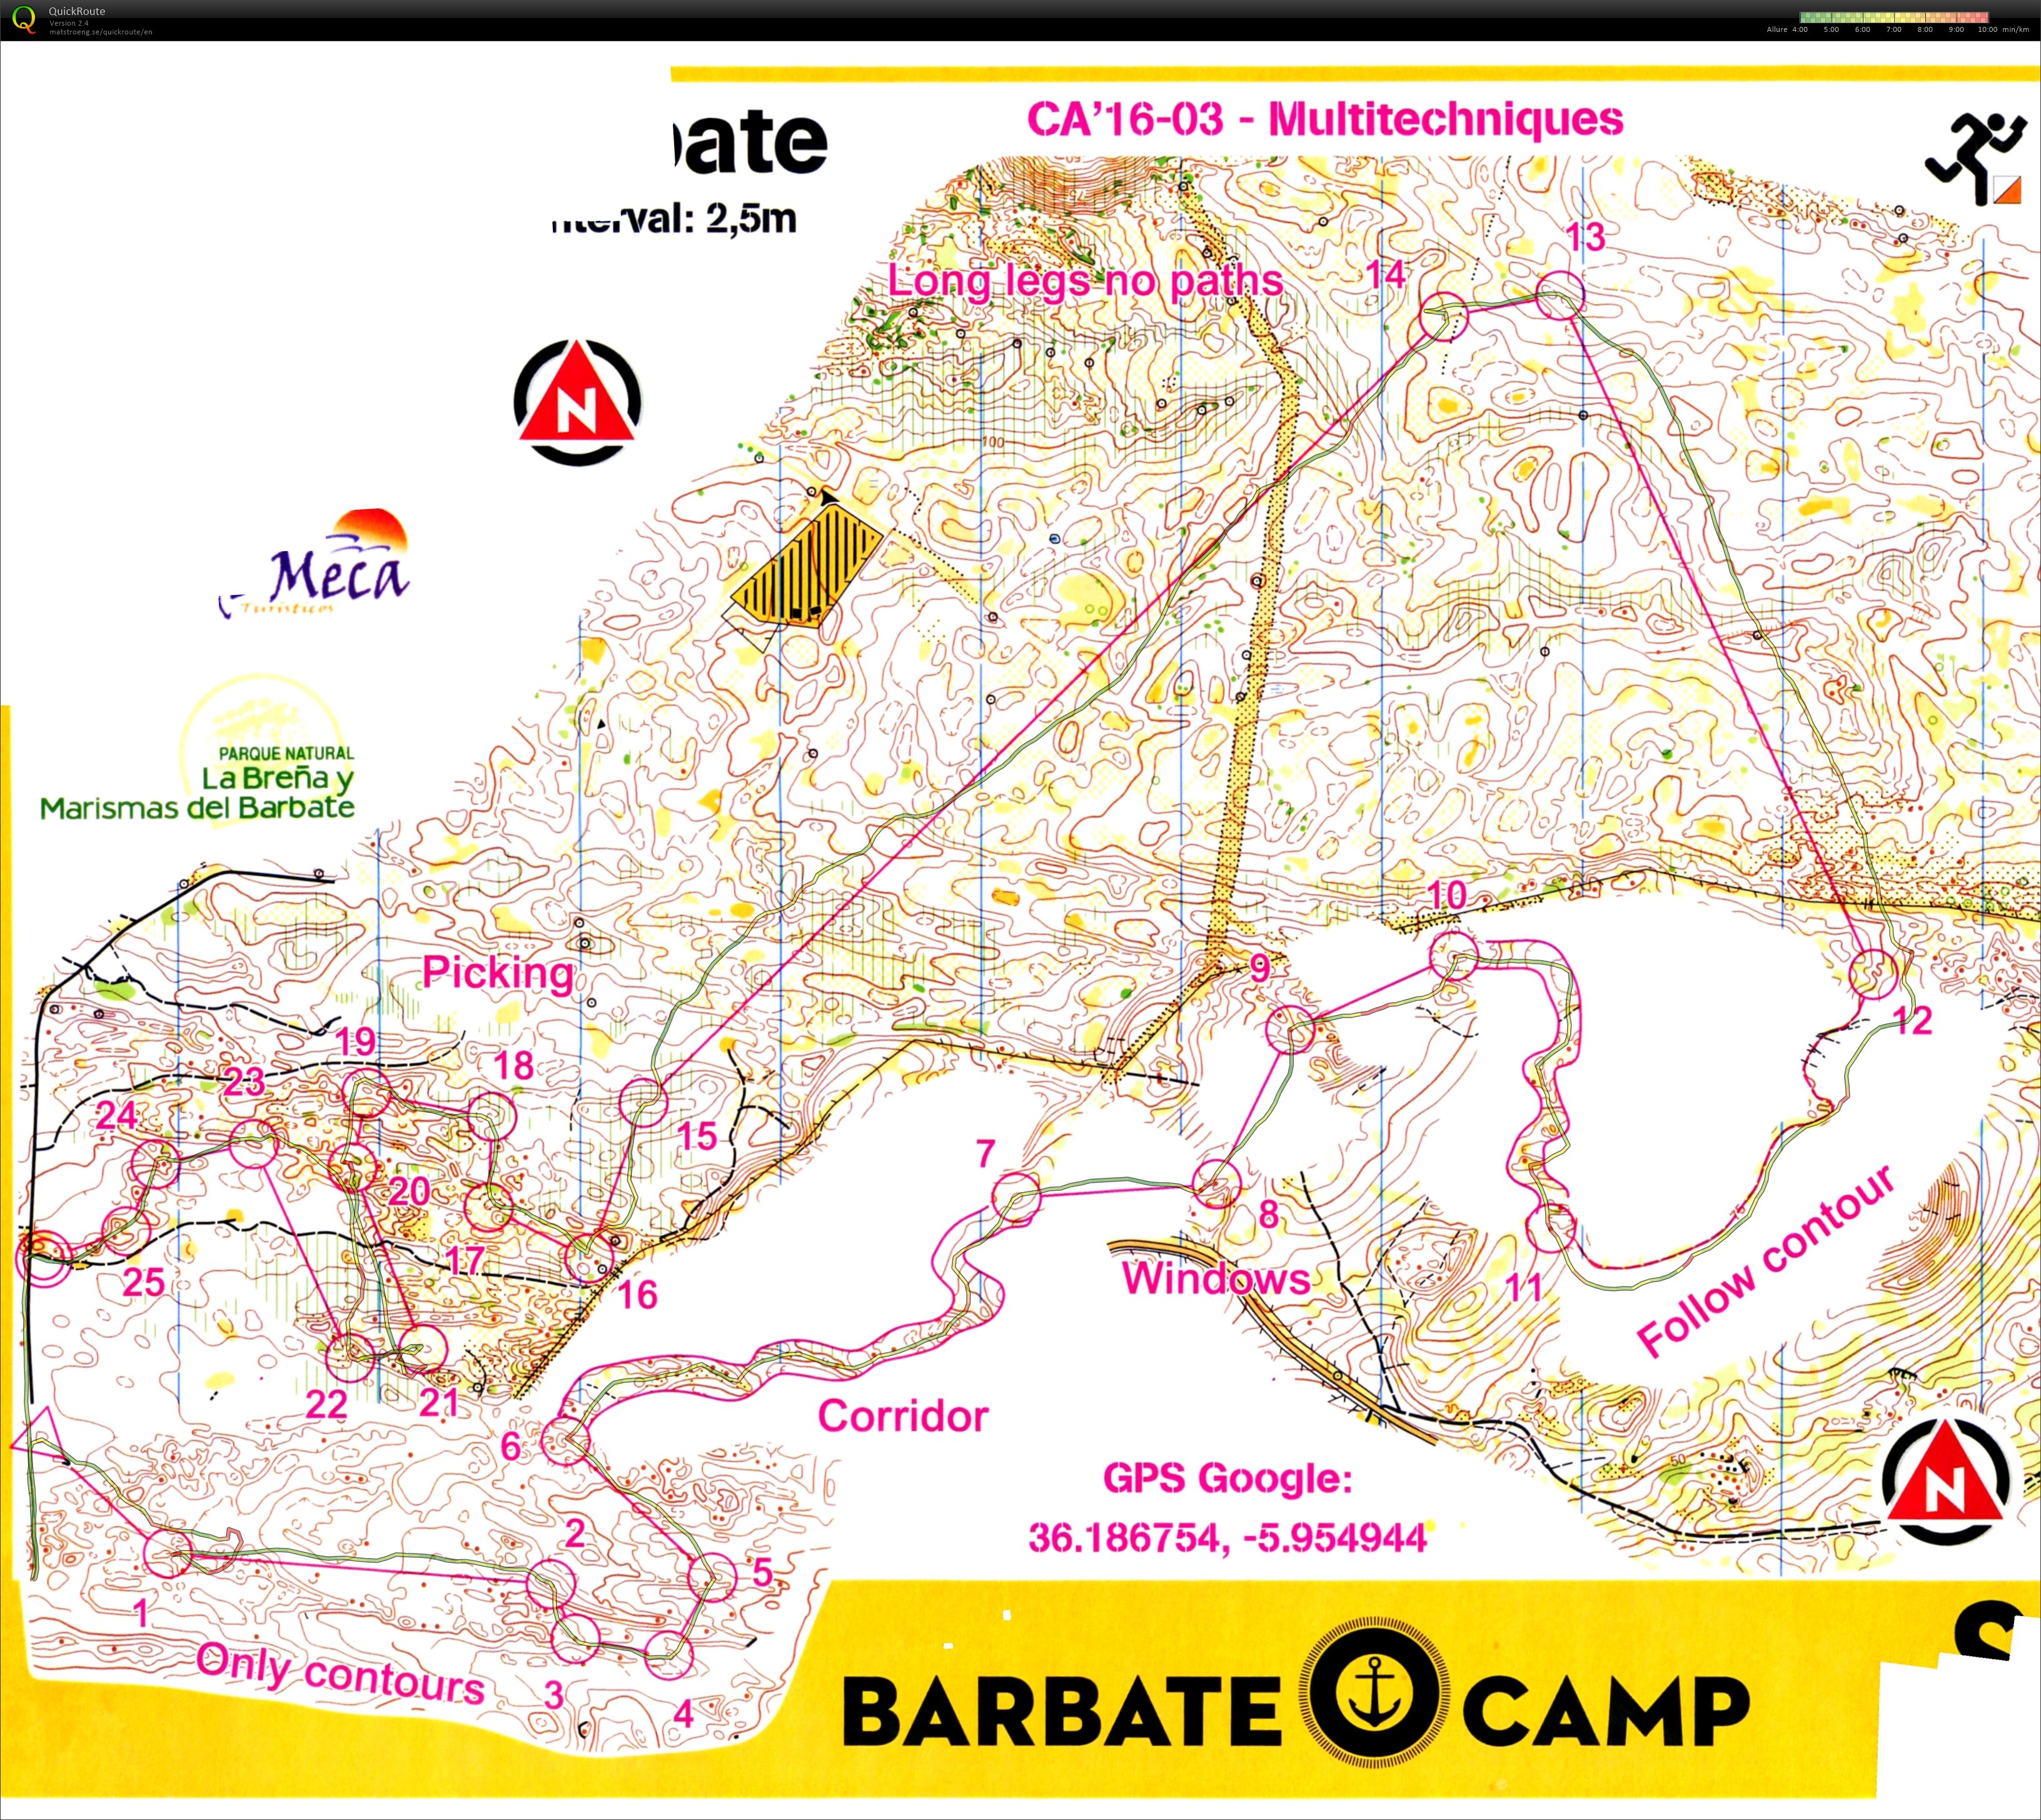 Camp Barbate_5 Mtk (28-02-2016)